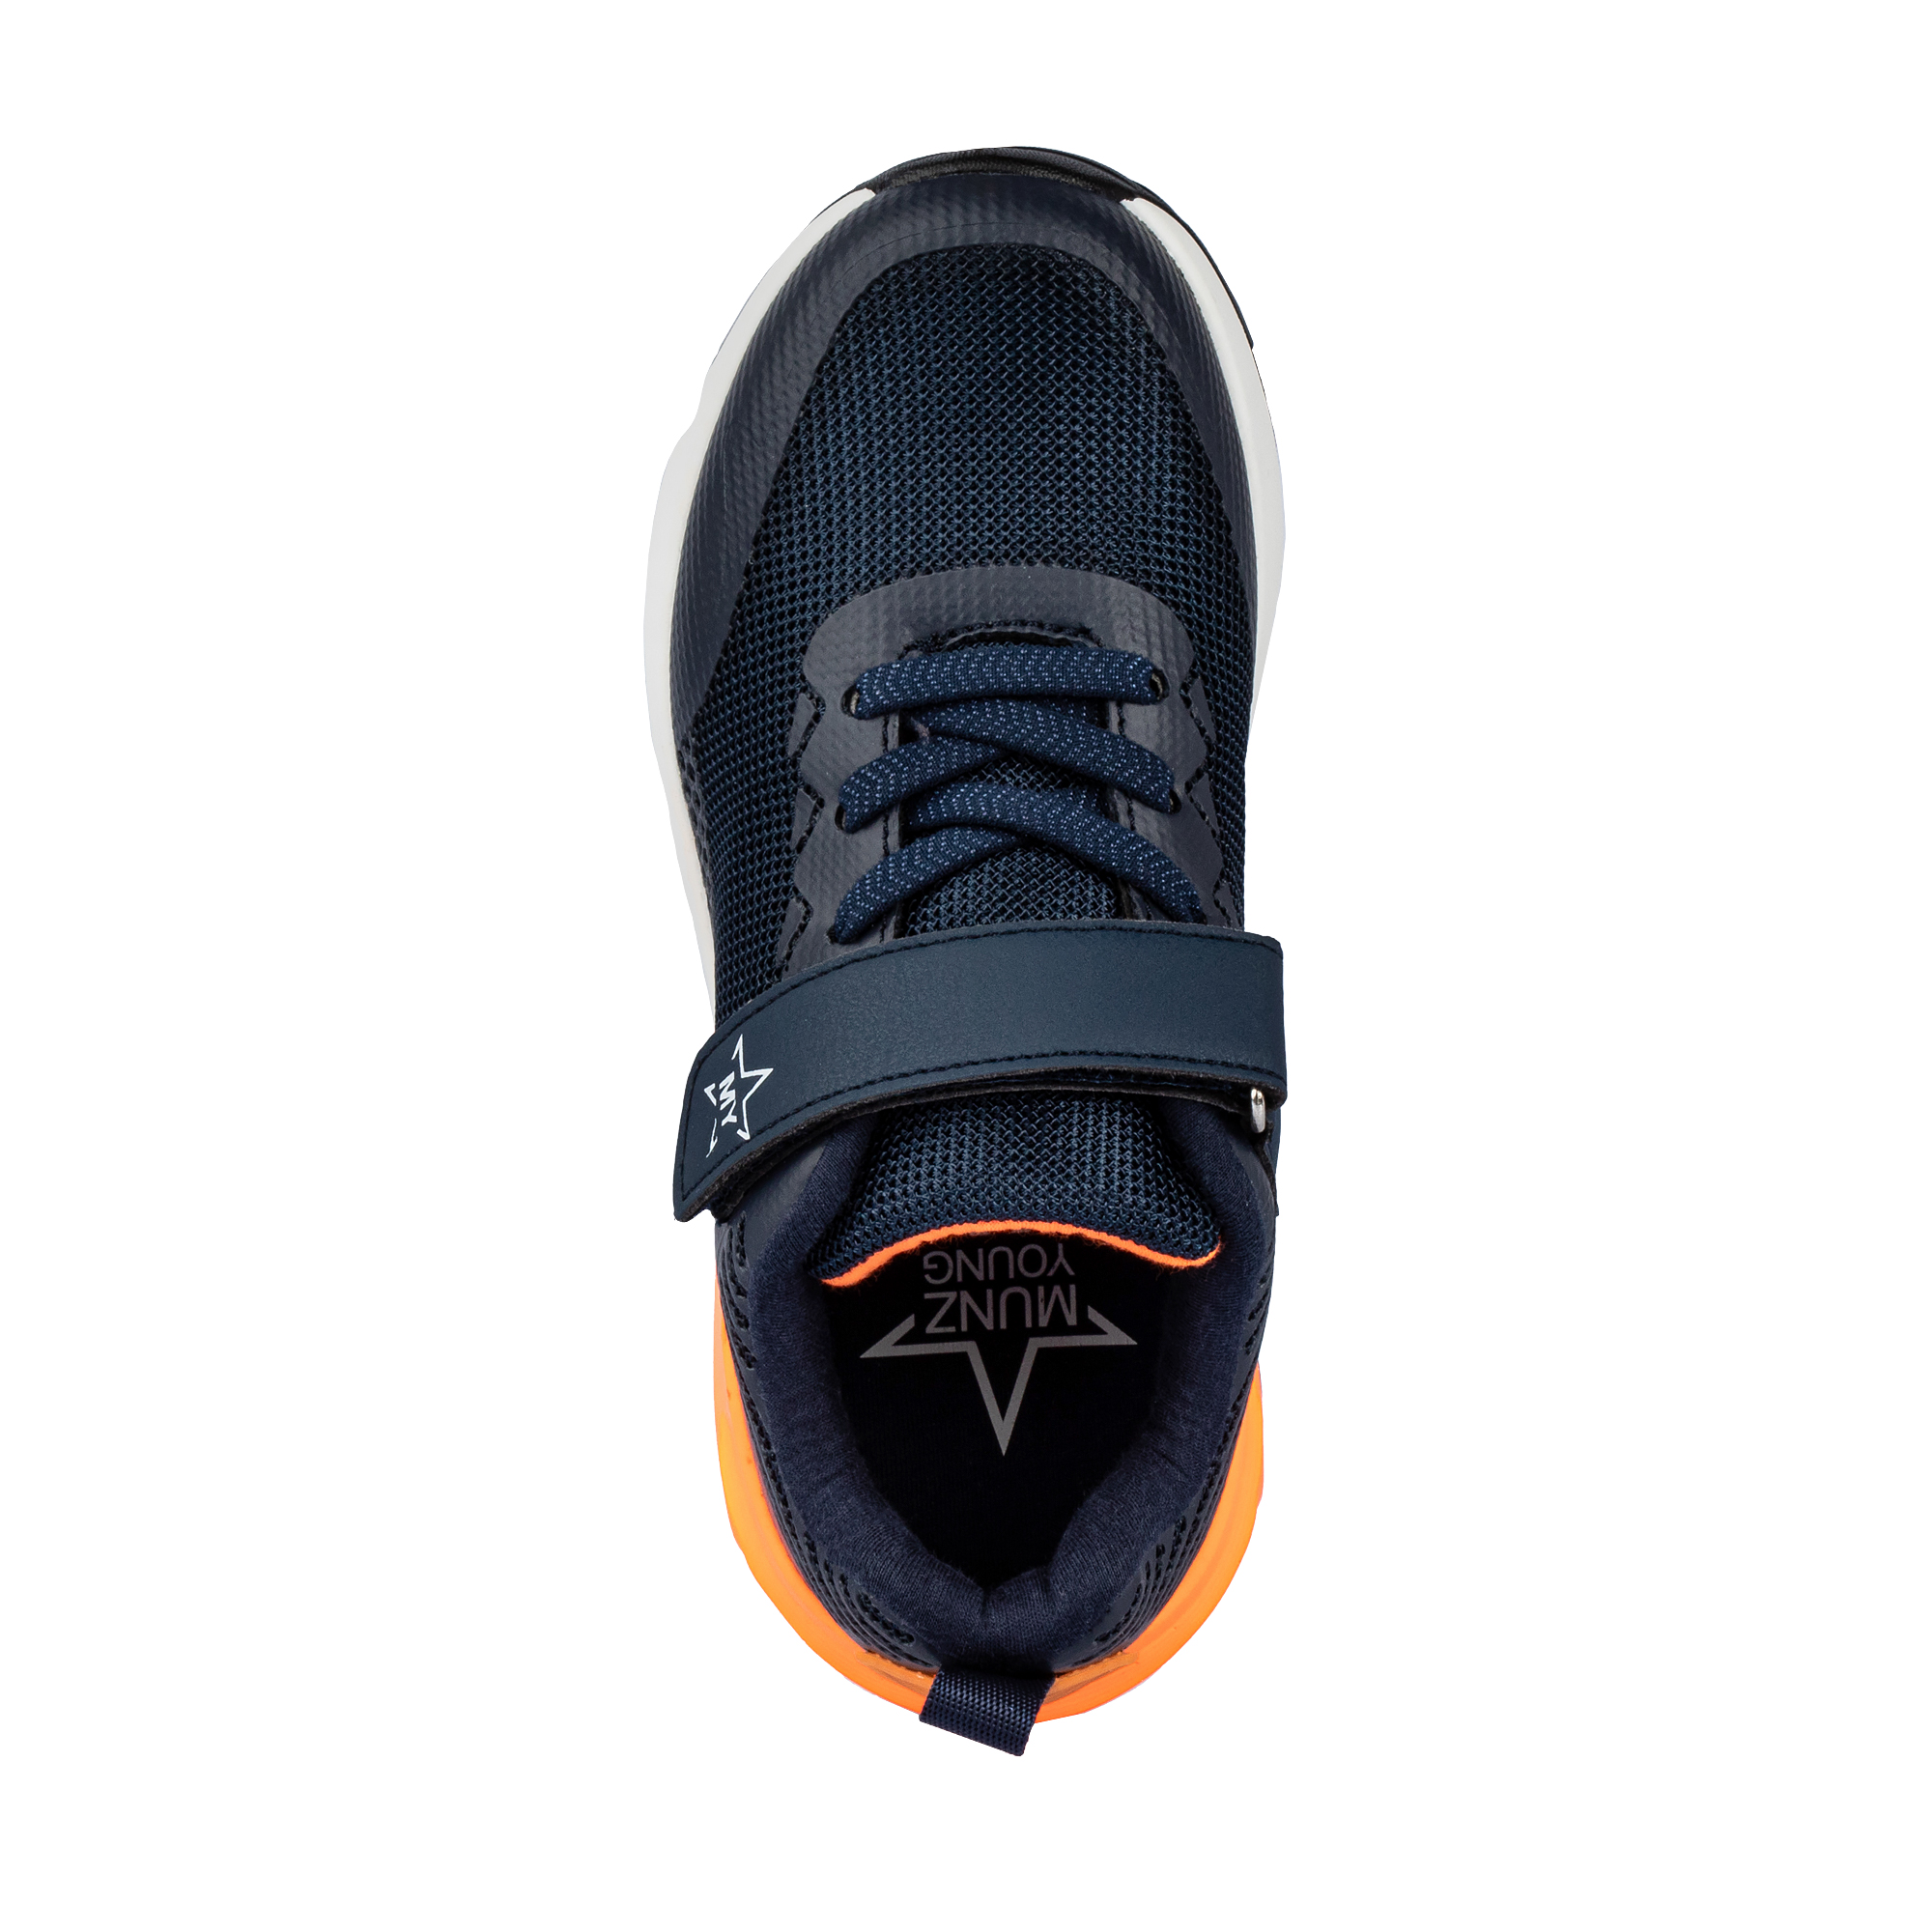 Обувь для мальчиков MUNZ YOUNG 189-285A-2203, цвет темно-синий, размер 33 - фото 5